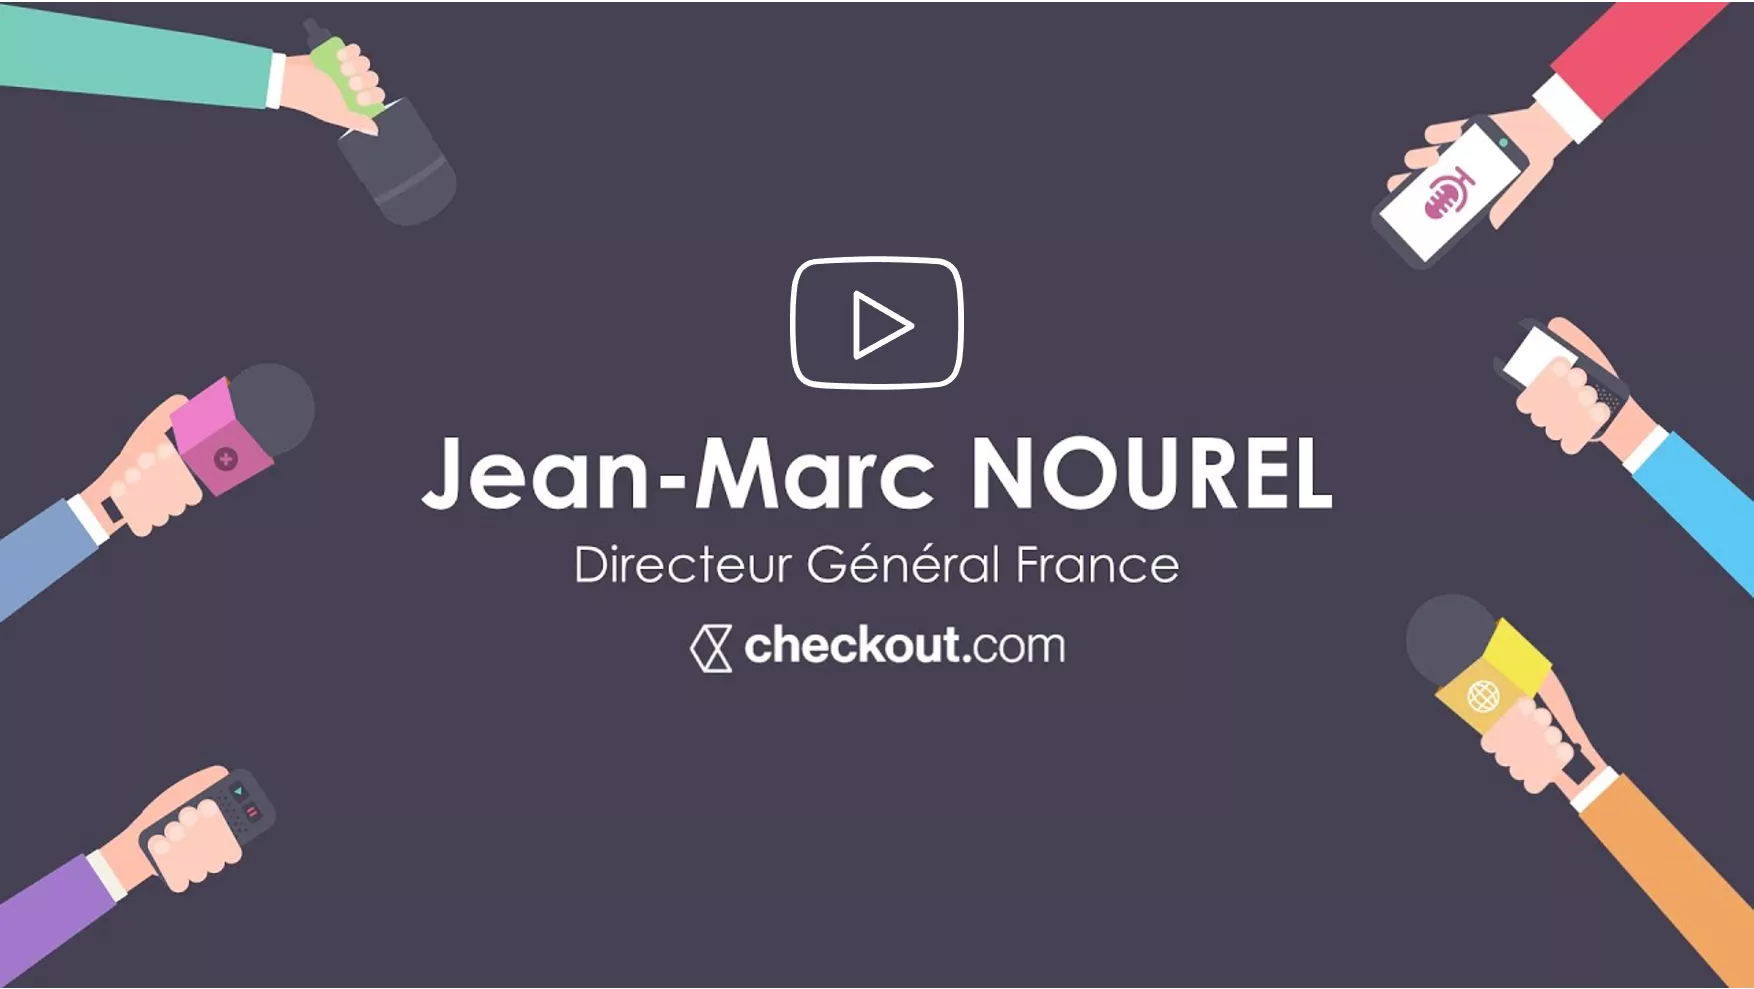 Interview Jean-Marx Nourel